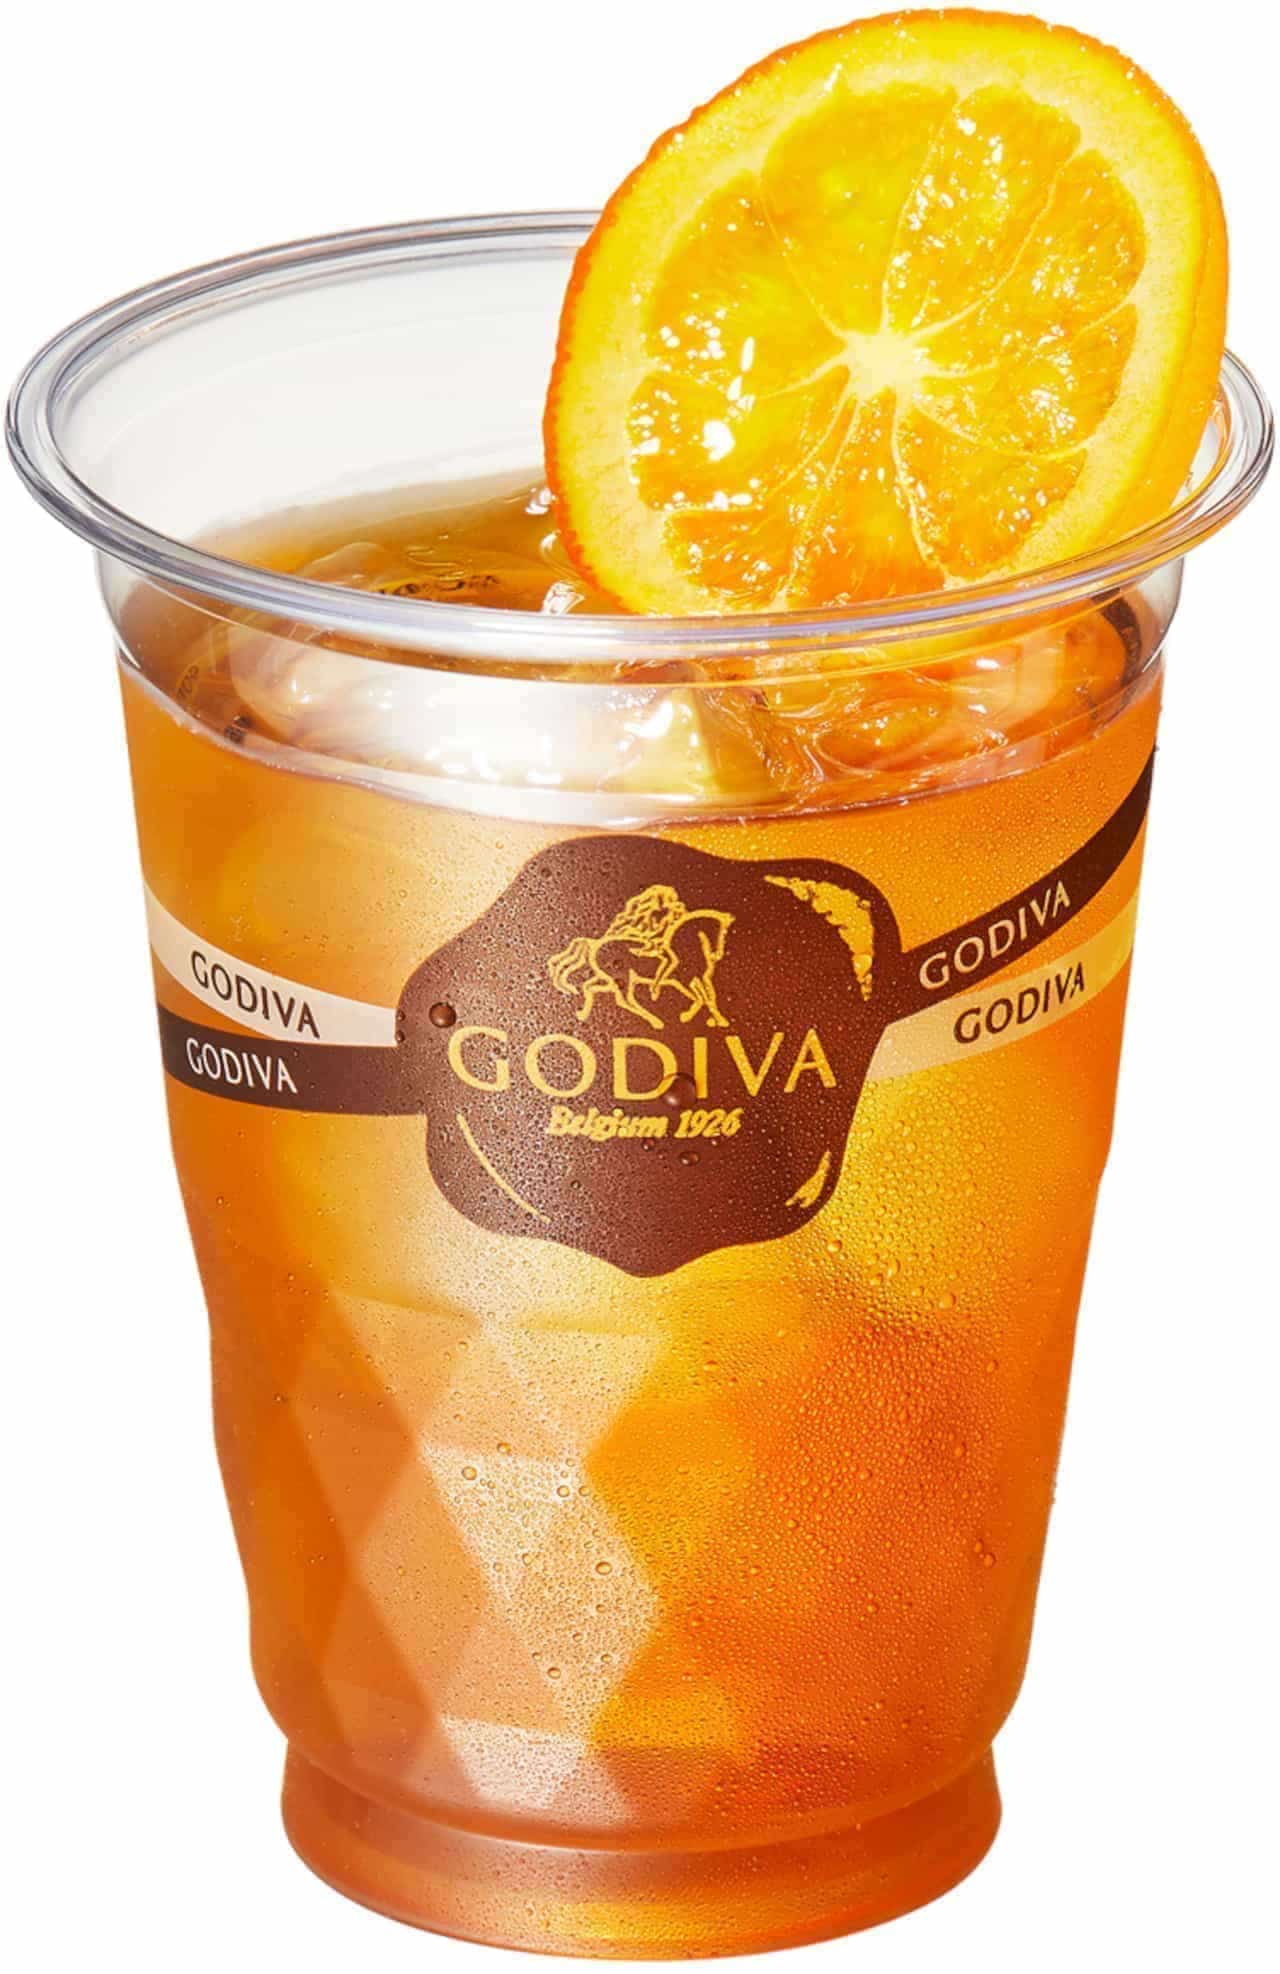 Godiva's "Ice Coffee" and "Ice Tea"